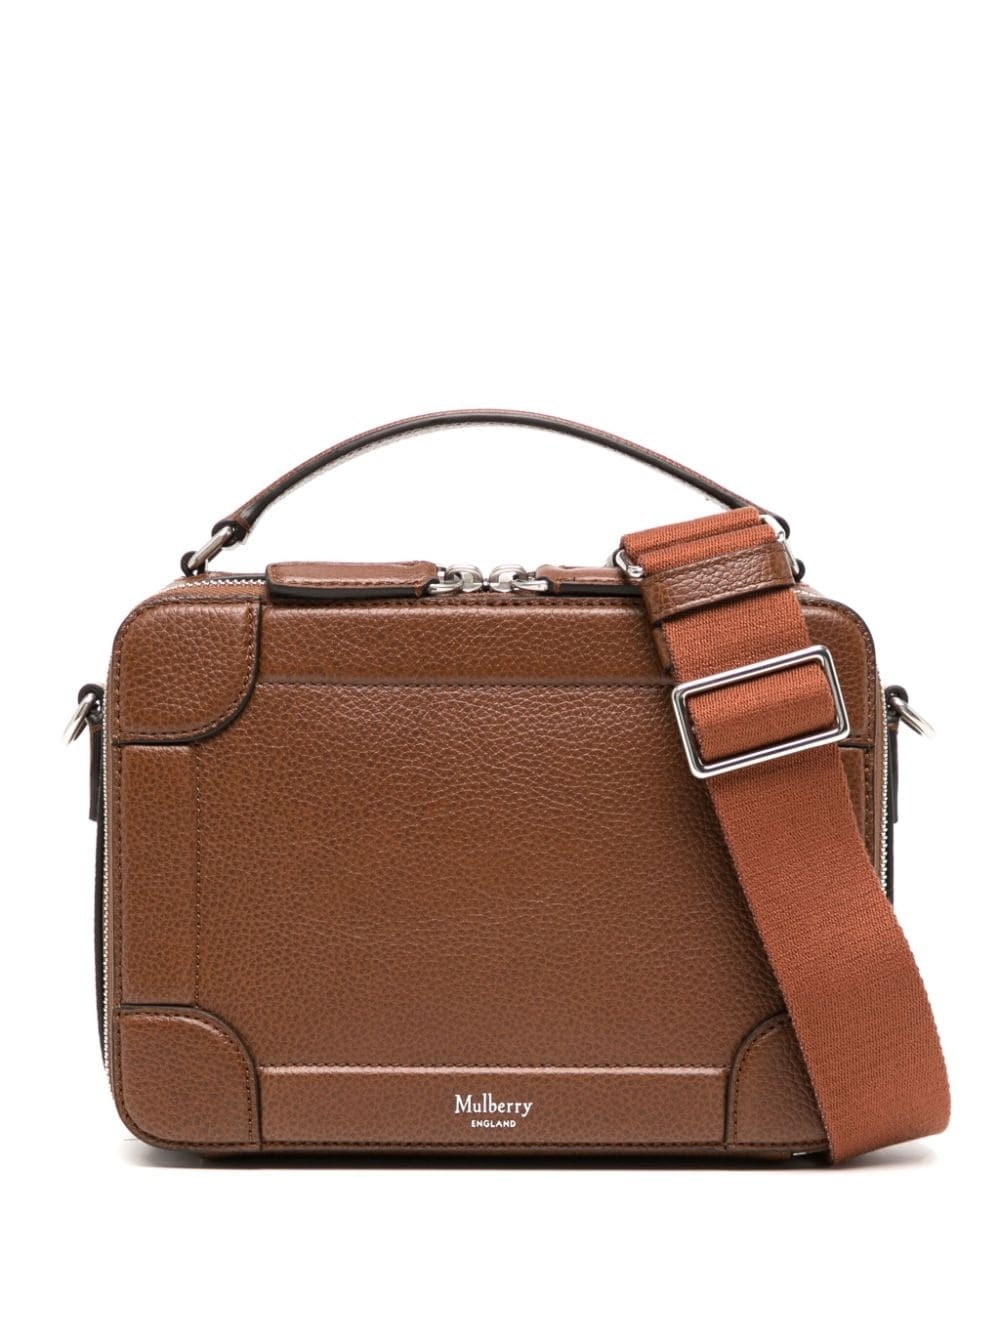 Belgrave leather messenger bag - 1